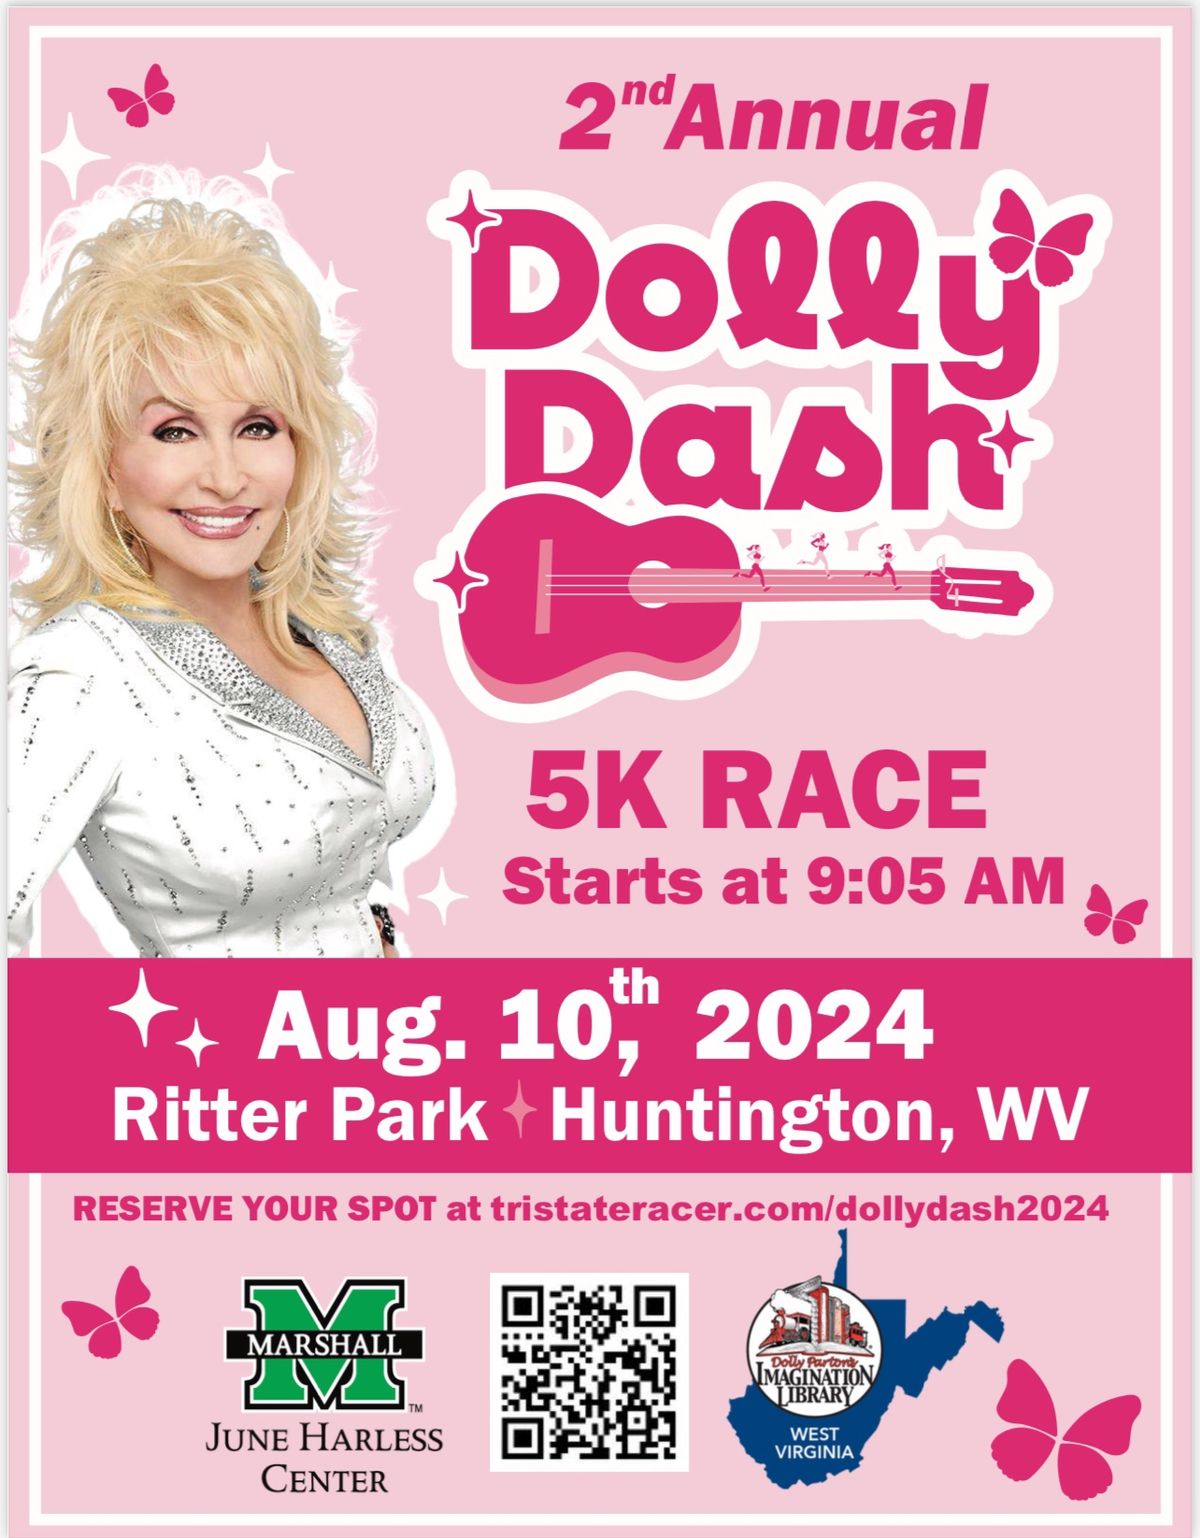 Dolly Dash 5K Race